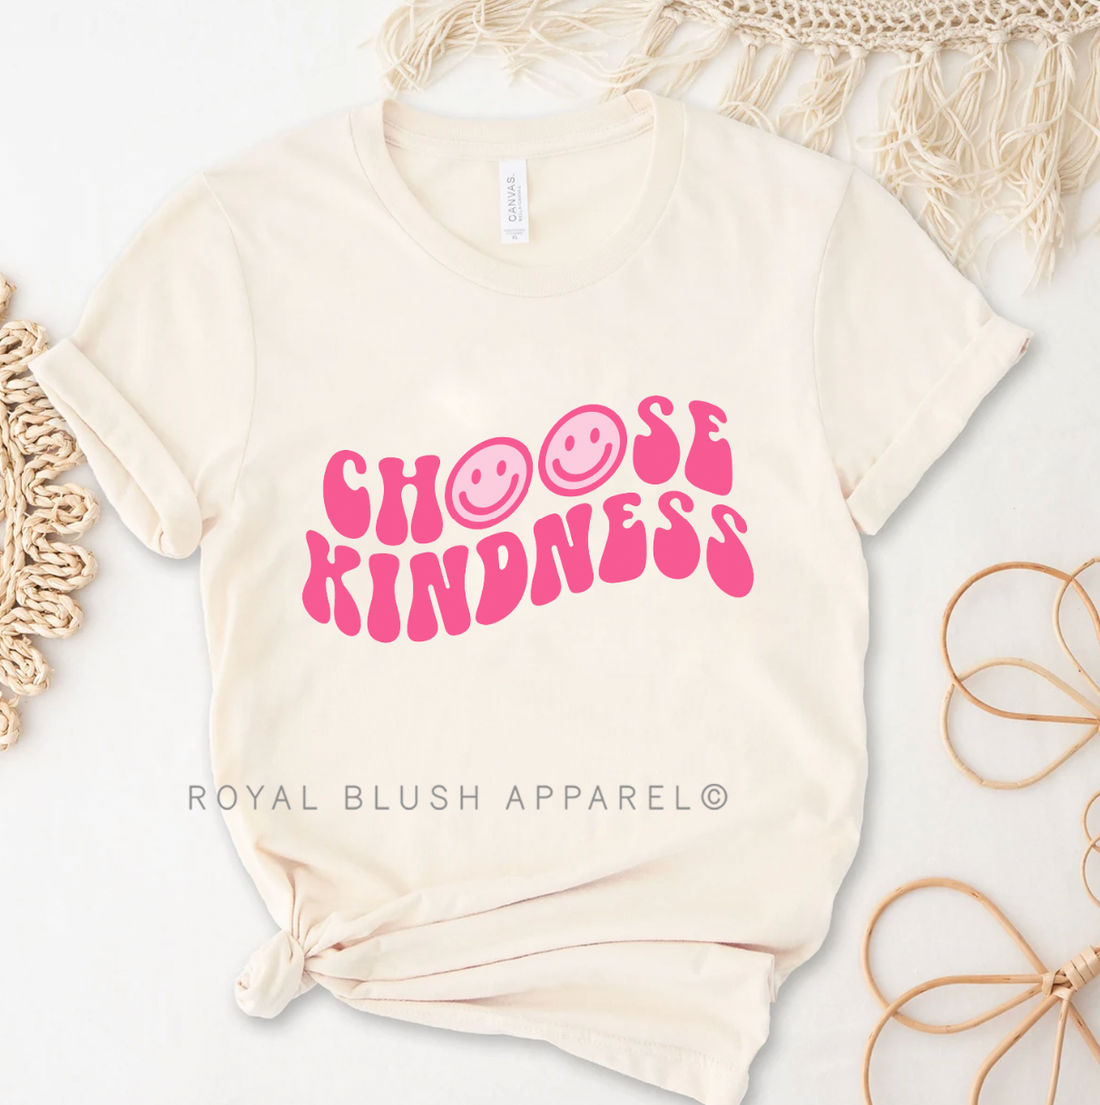 Choisissez Kindness T-shirt unisexe décontracté